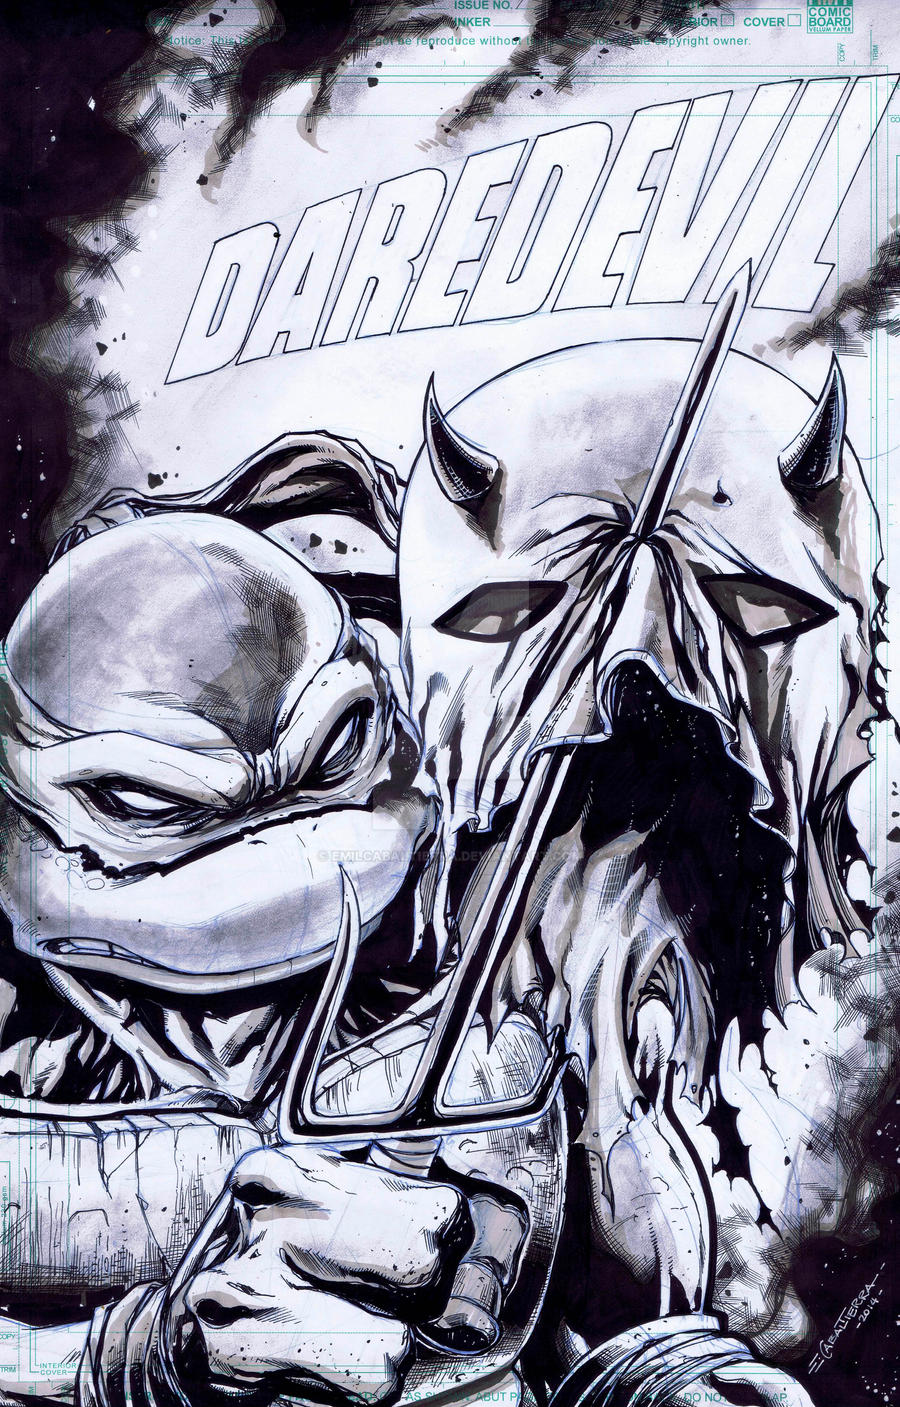 Daredevil Cover remake after Frank Miller